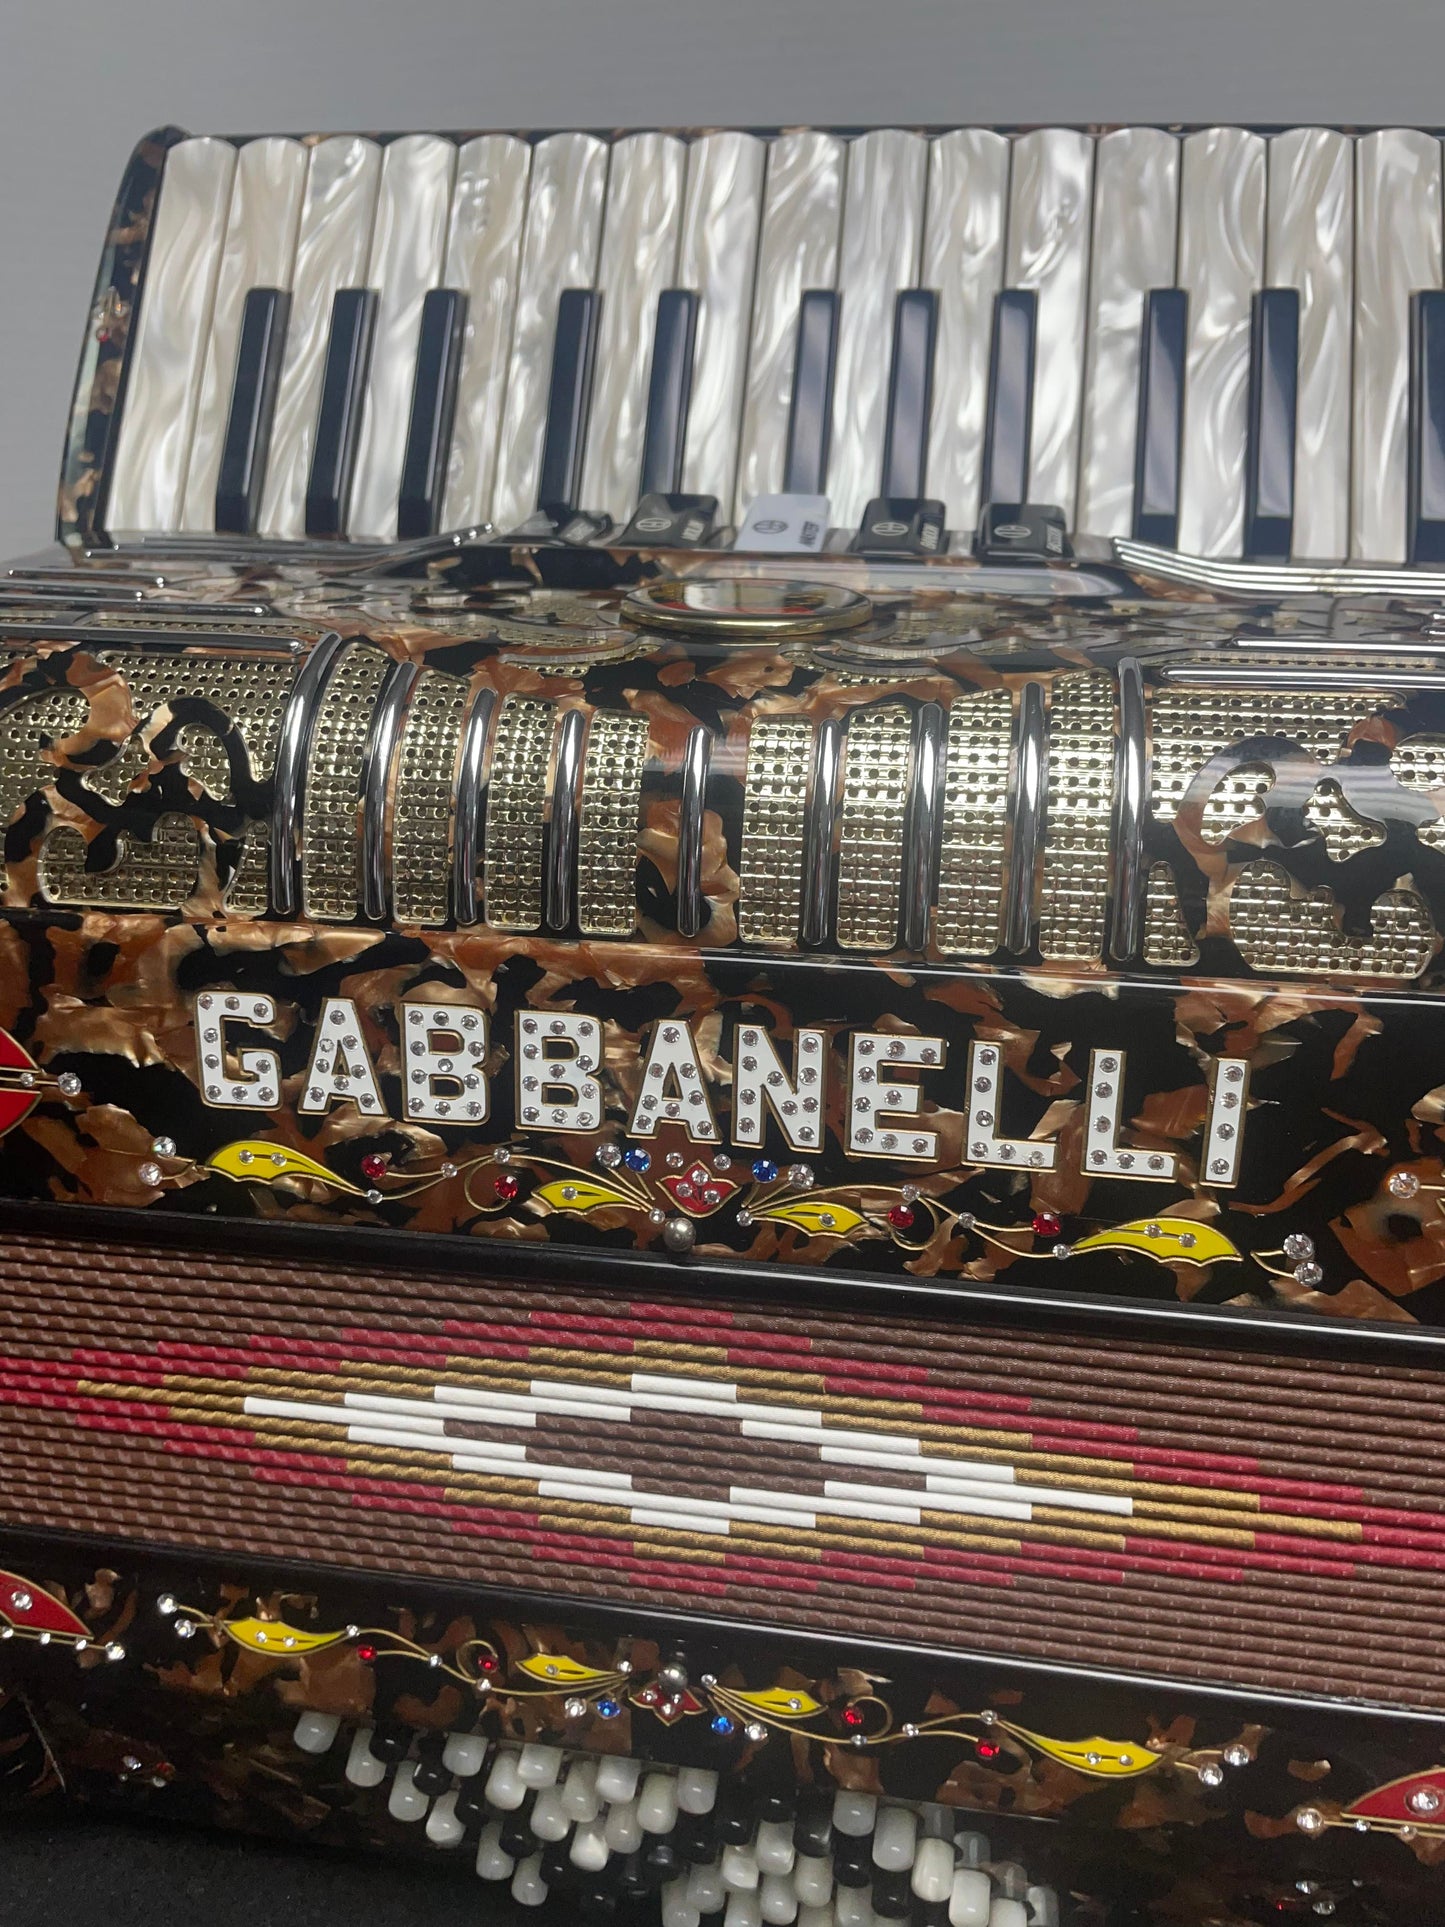 Gabbanelli Accordion Piano 5SW